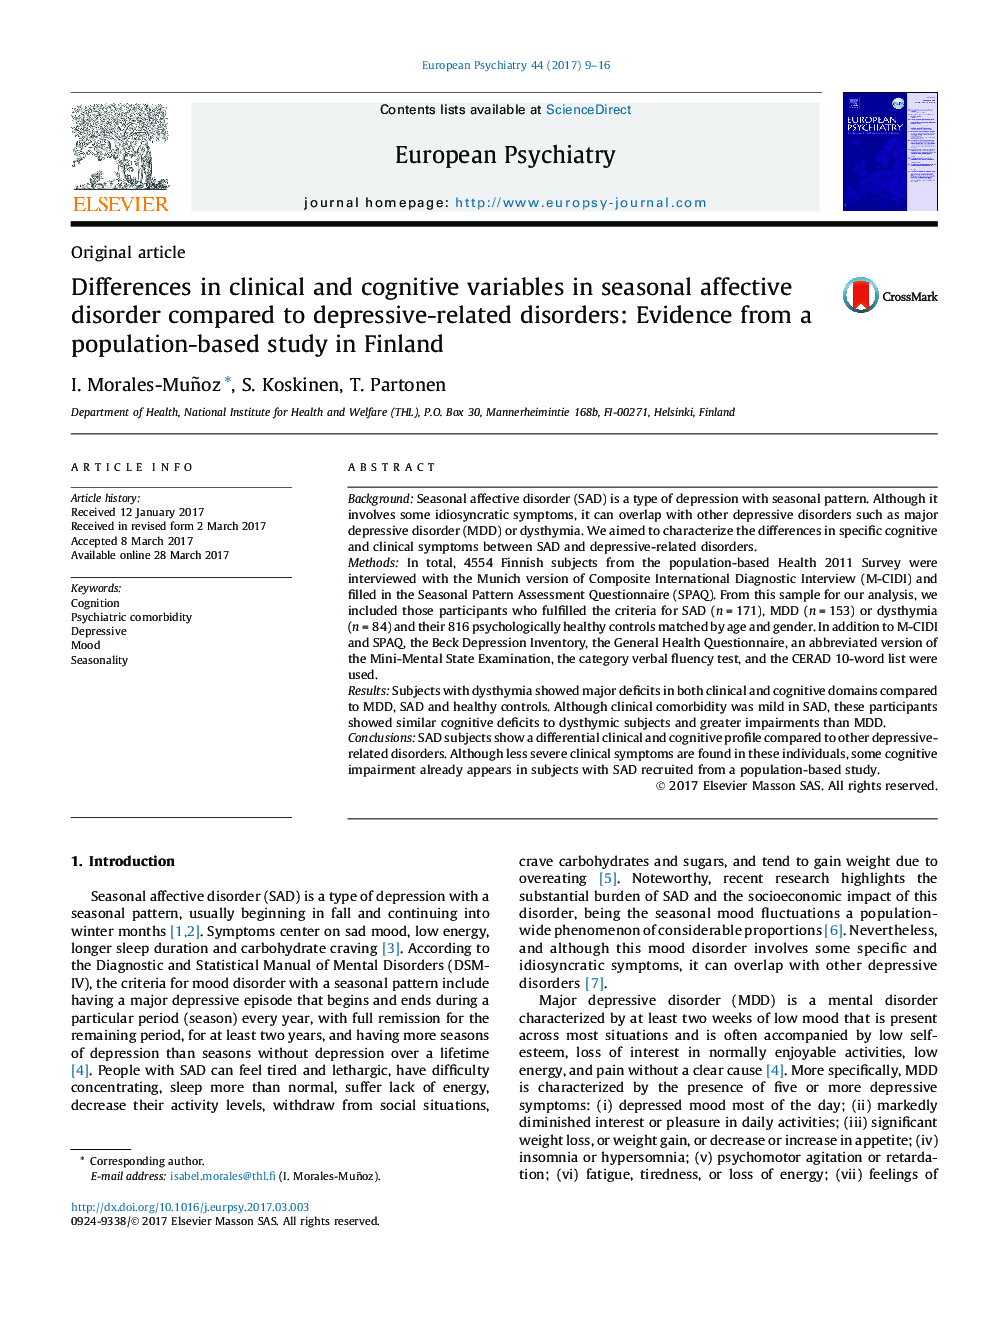 مقاله اصلی تفاوت در متغیرهای بالینی و شناختی در اختلال عاطفی فصلی در مقایسه با اختلالات مرتبط با افسردگی: شواهد از یک مطالعه مبتنی بر جمعیت در فنلاند 